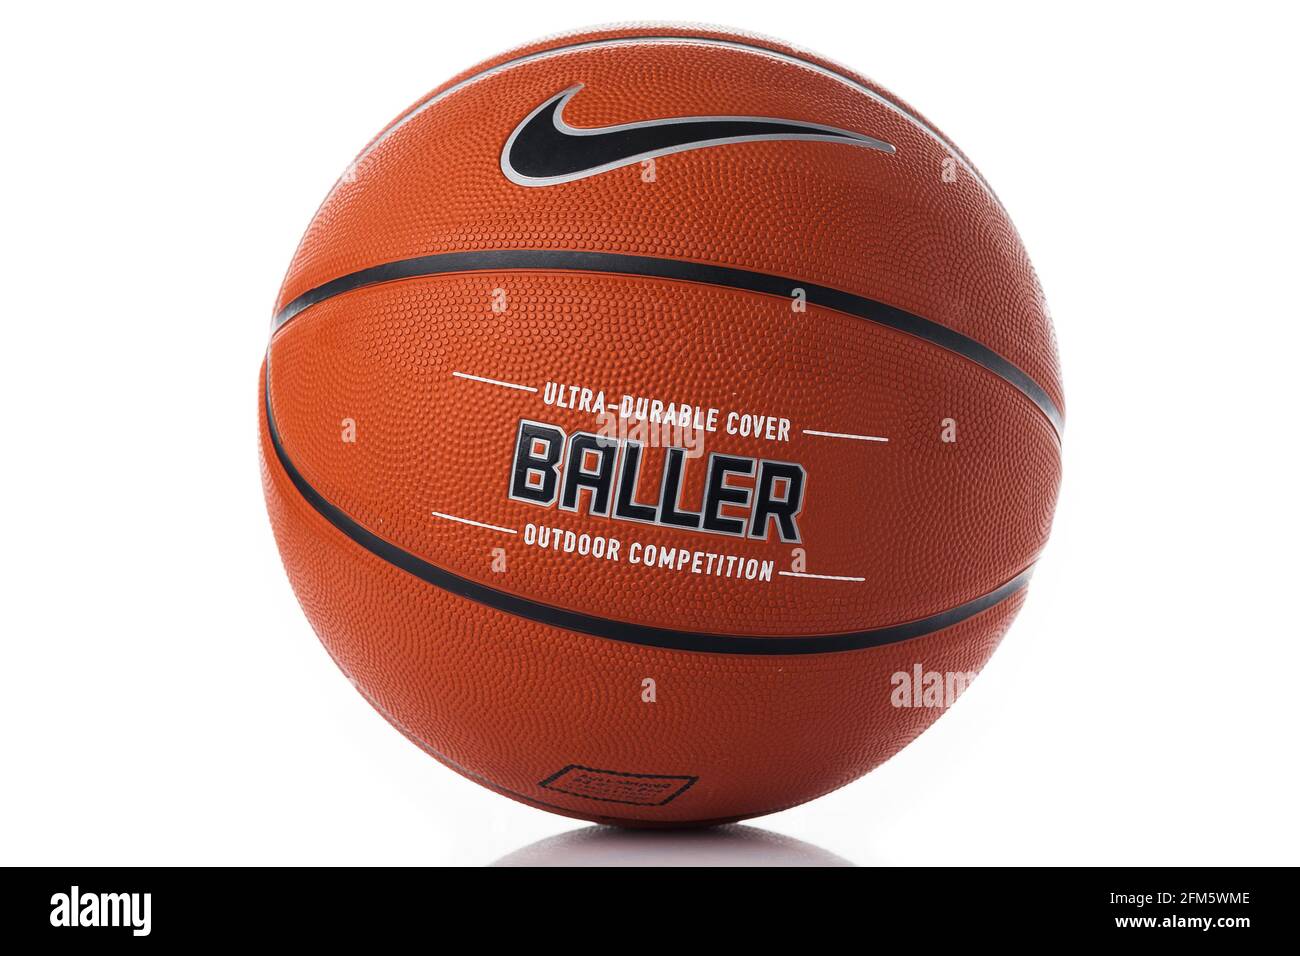 Marchio Nike, pallone da basket Nike Baller. Palla da esterno in gomma  arancione, copertura ultra resistente, primo piano su sfondo bianco Foto  stock - Alamy